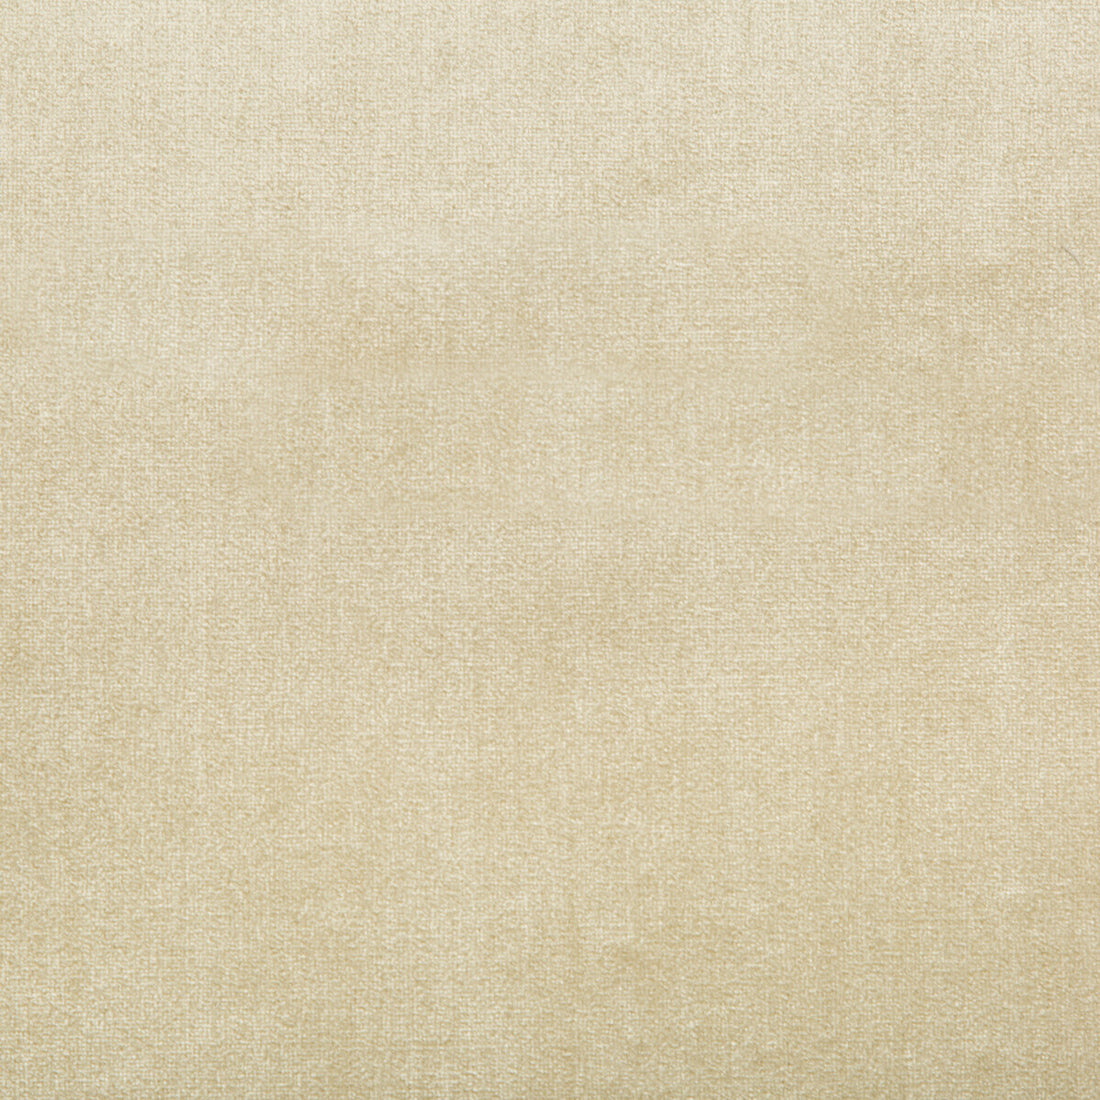 Duchess Velvet fabric in beige color - pattern 2016121.116.0 - by Lee Jofa